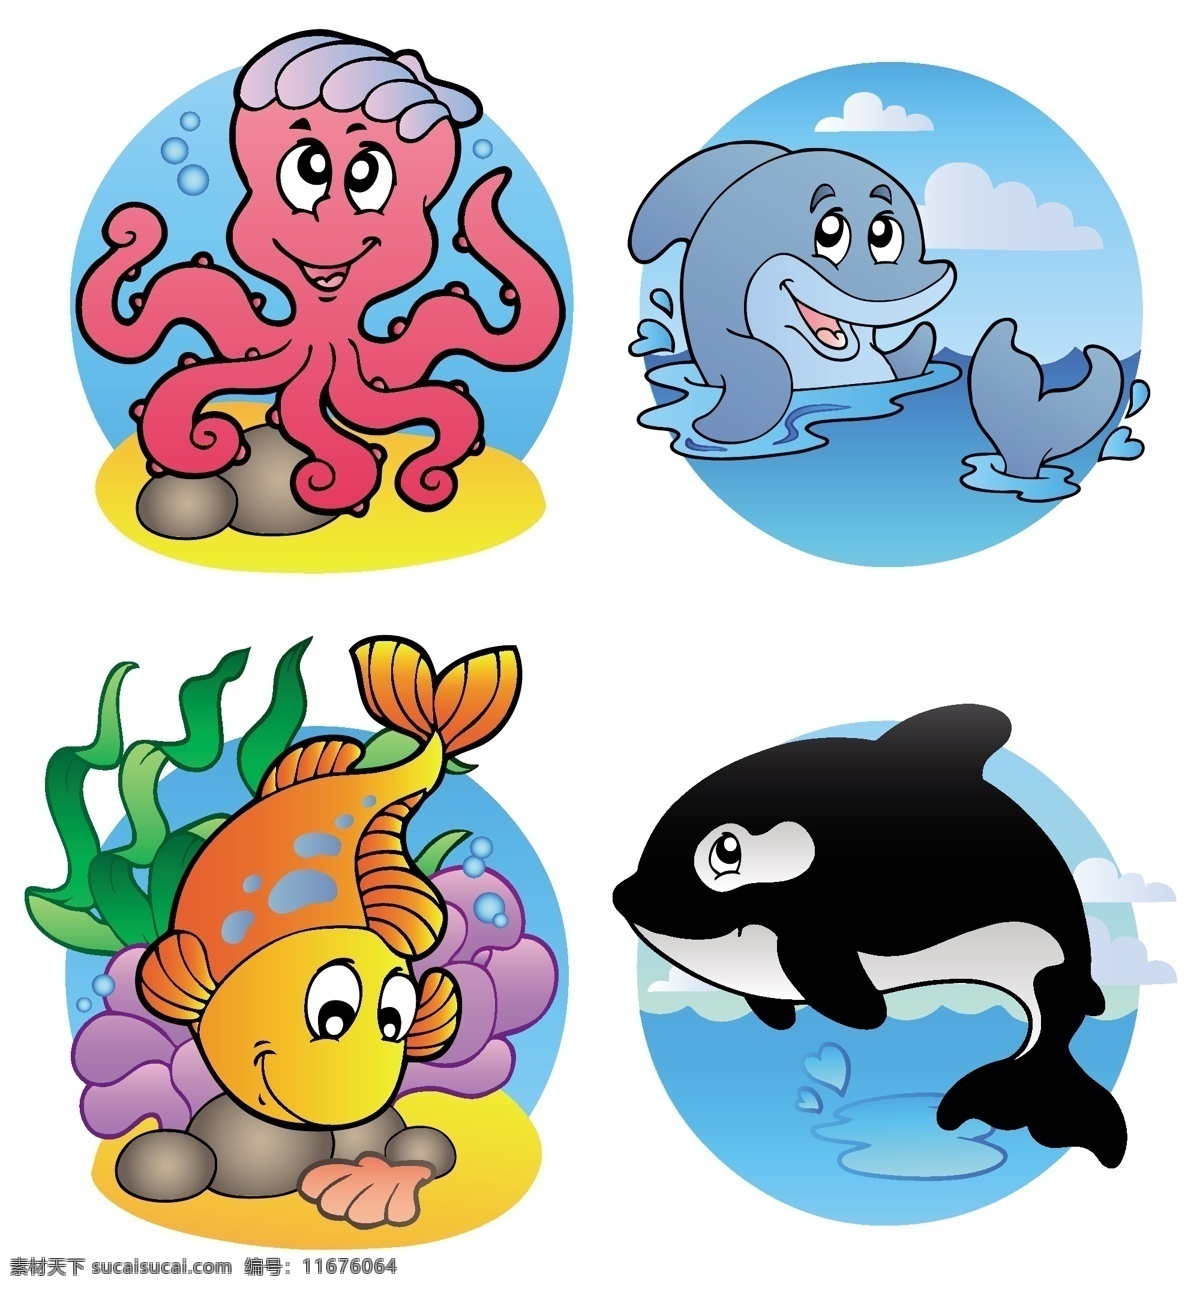 卡通海洋生物 卡通 动物 可爱 卡通生物 海洋生物 鲸鱼 章鱼 海豚 陆地动物 生物世界 矢量素材 白色